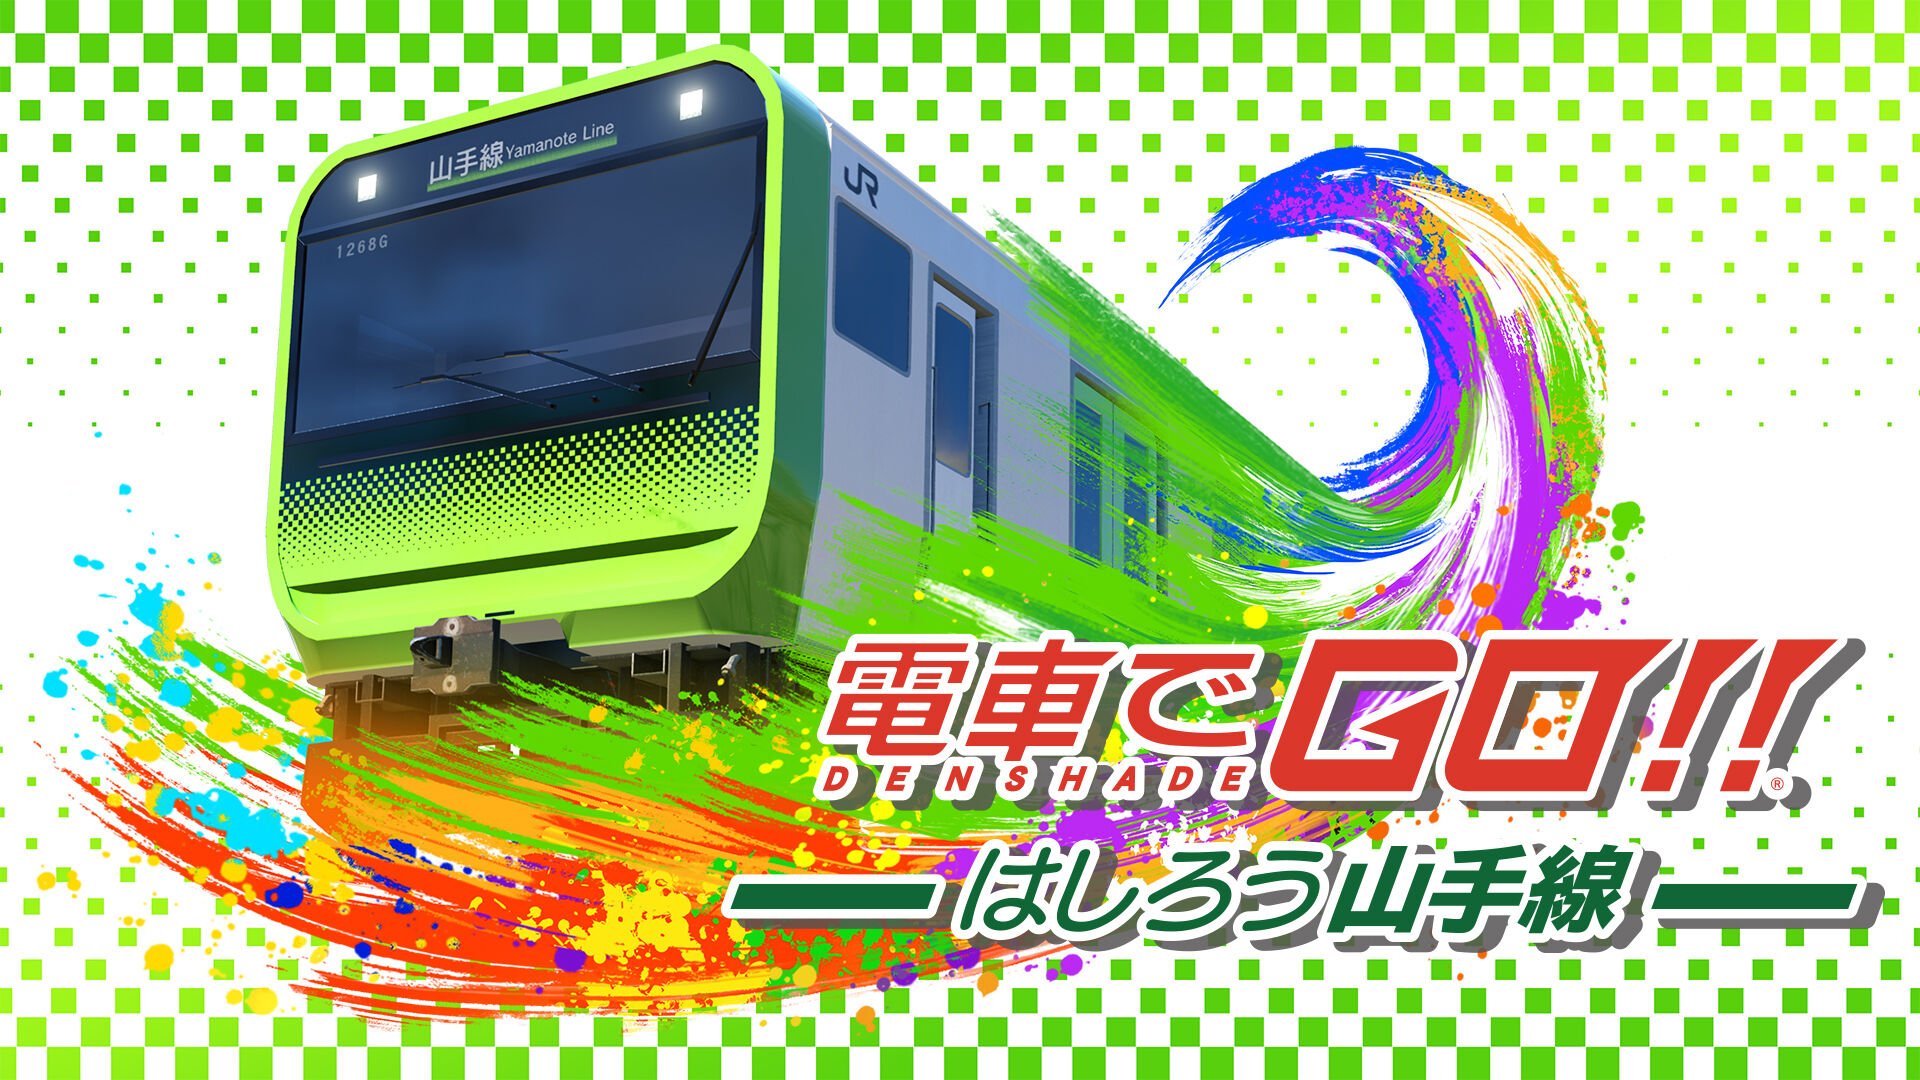 電車でＧＯ！！ はしろう山手線 ダウンロード版 | My Nintendo Store 